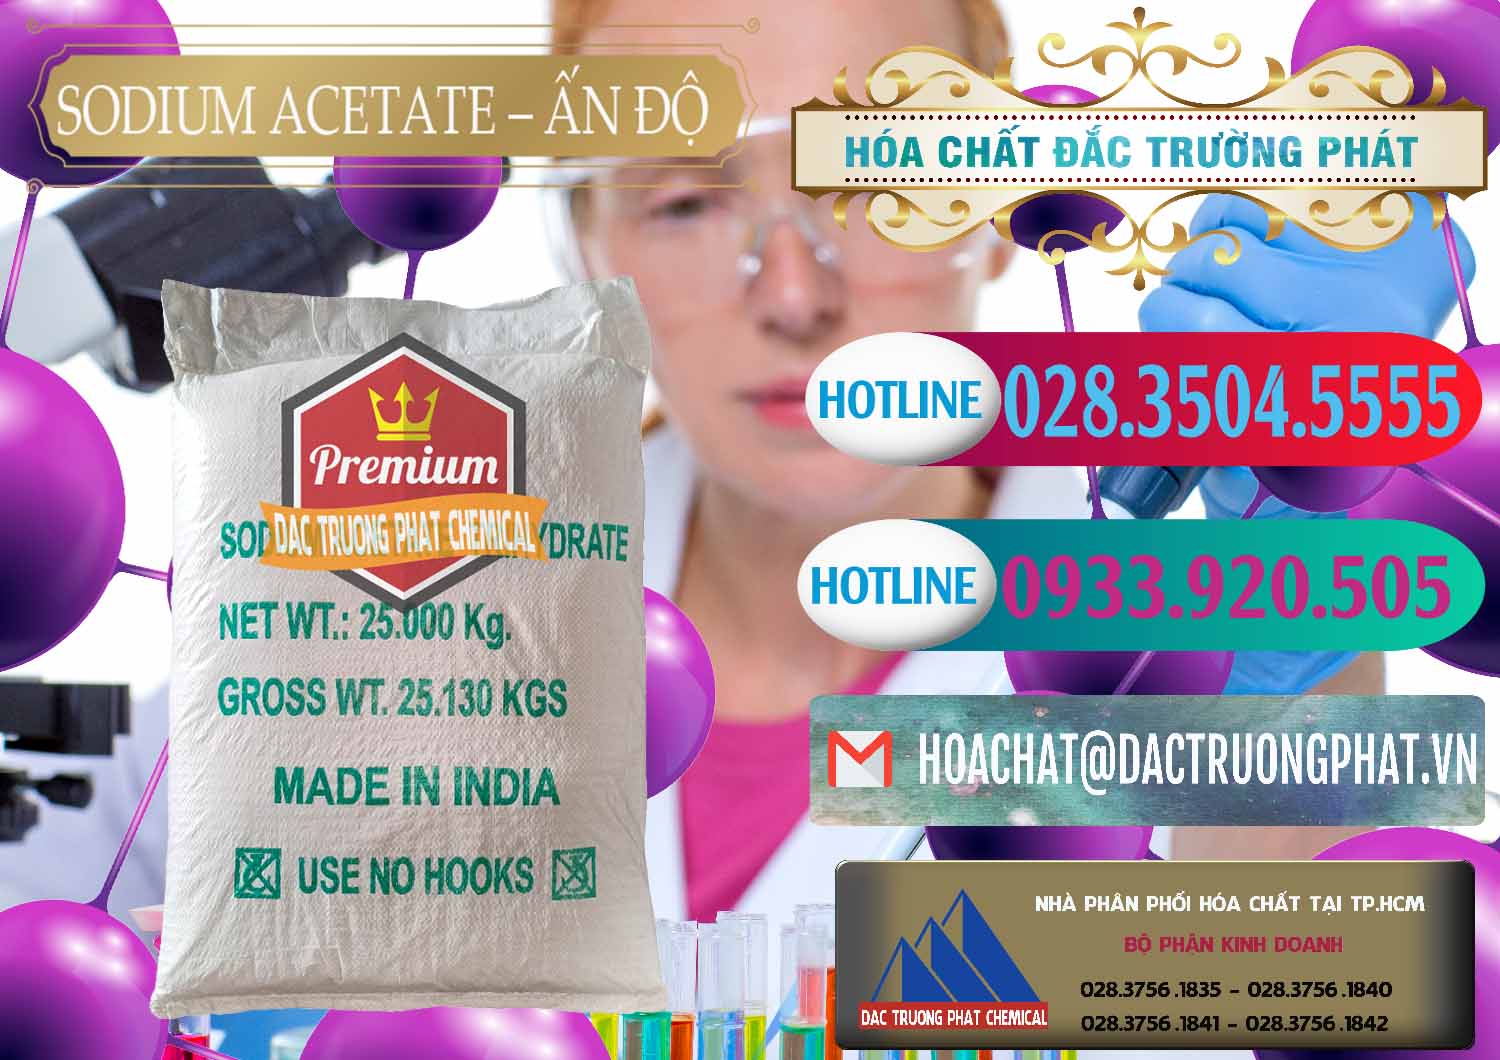 Phân phối & bán Sodium Acetate - Natri Acetate Ấn Độ India - 0133 - Cty phân phối & bán hóa chất tại TP.HCM - truongphat.vn